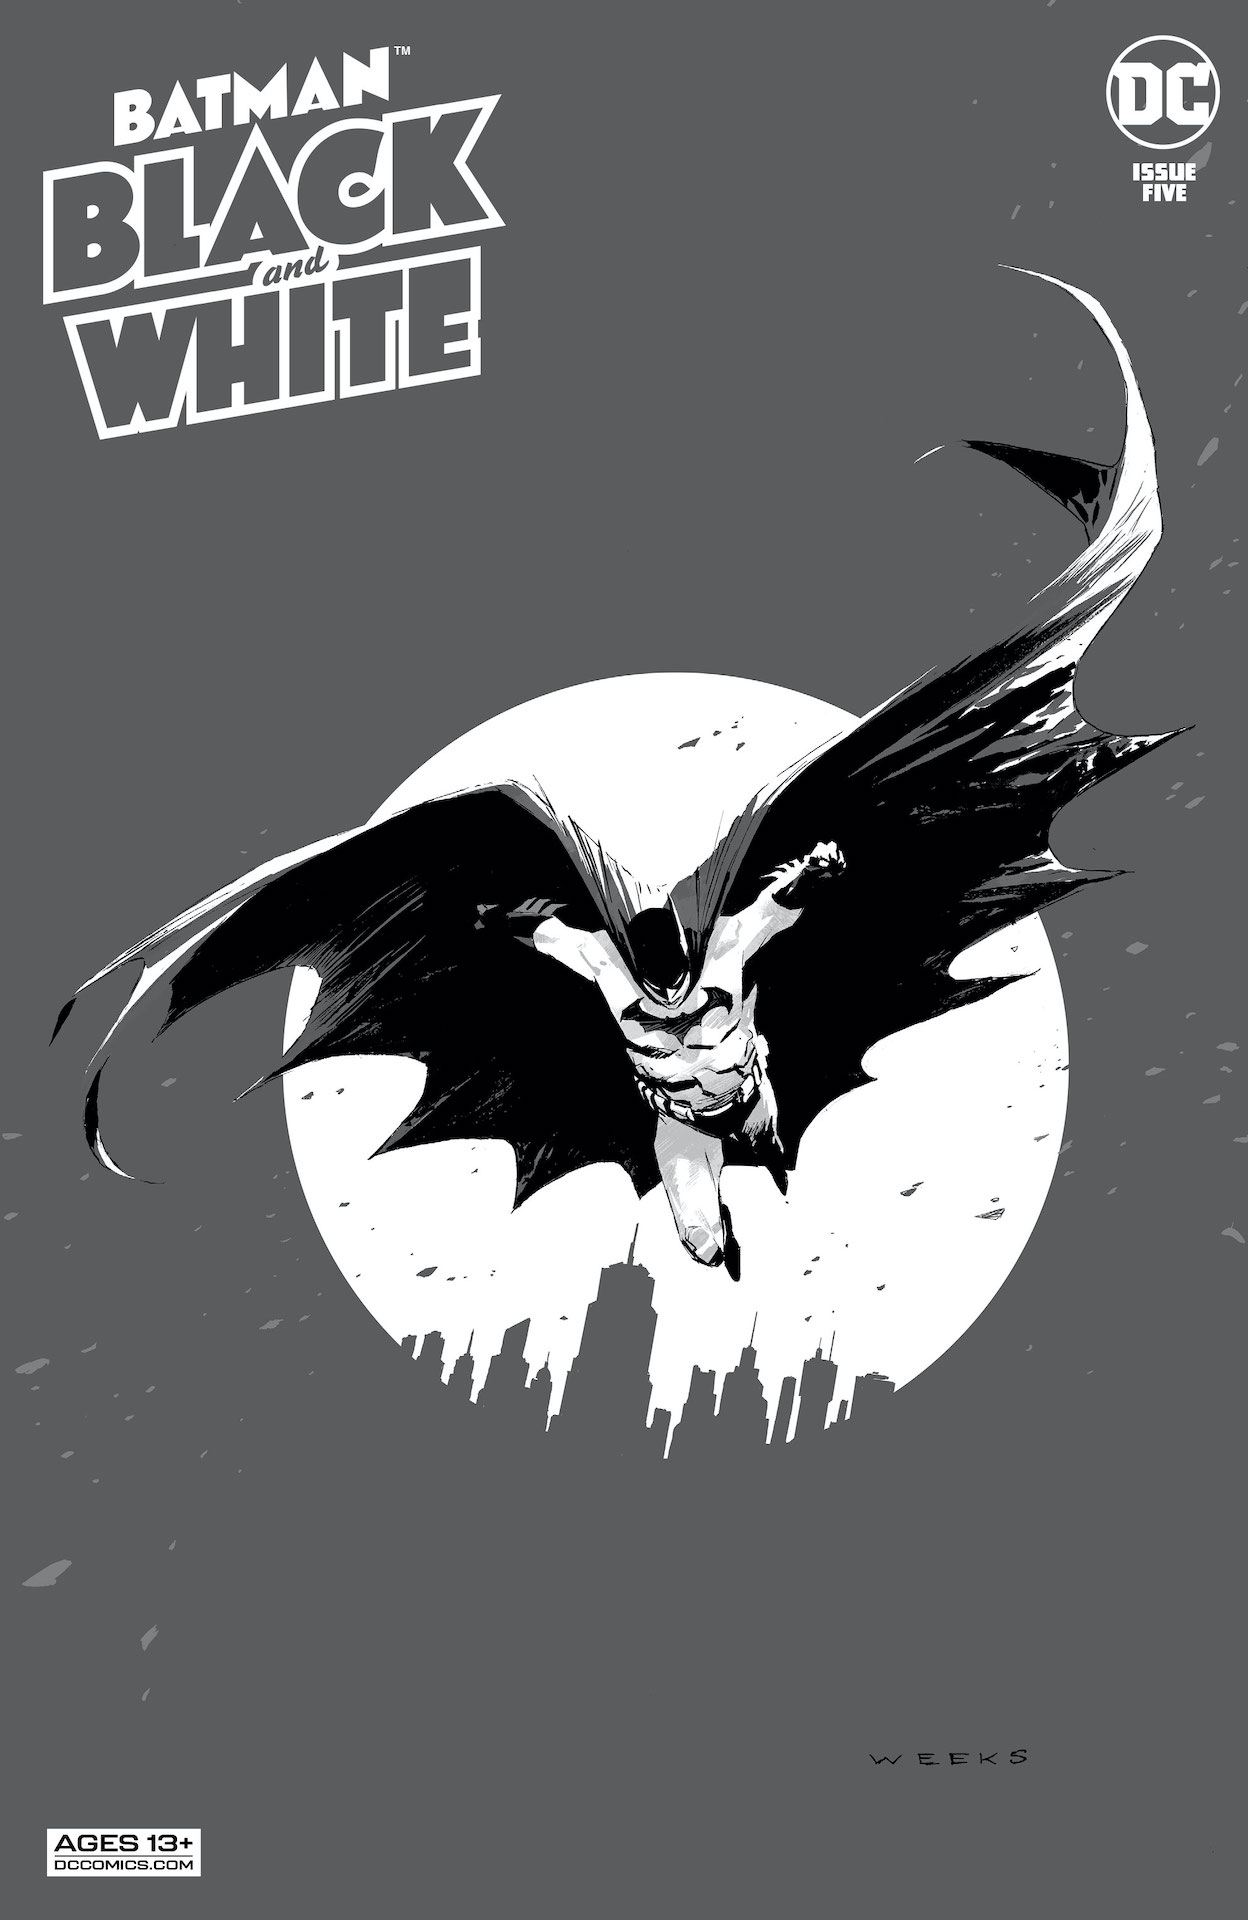 DC Preview: Batman: Black & White #5